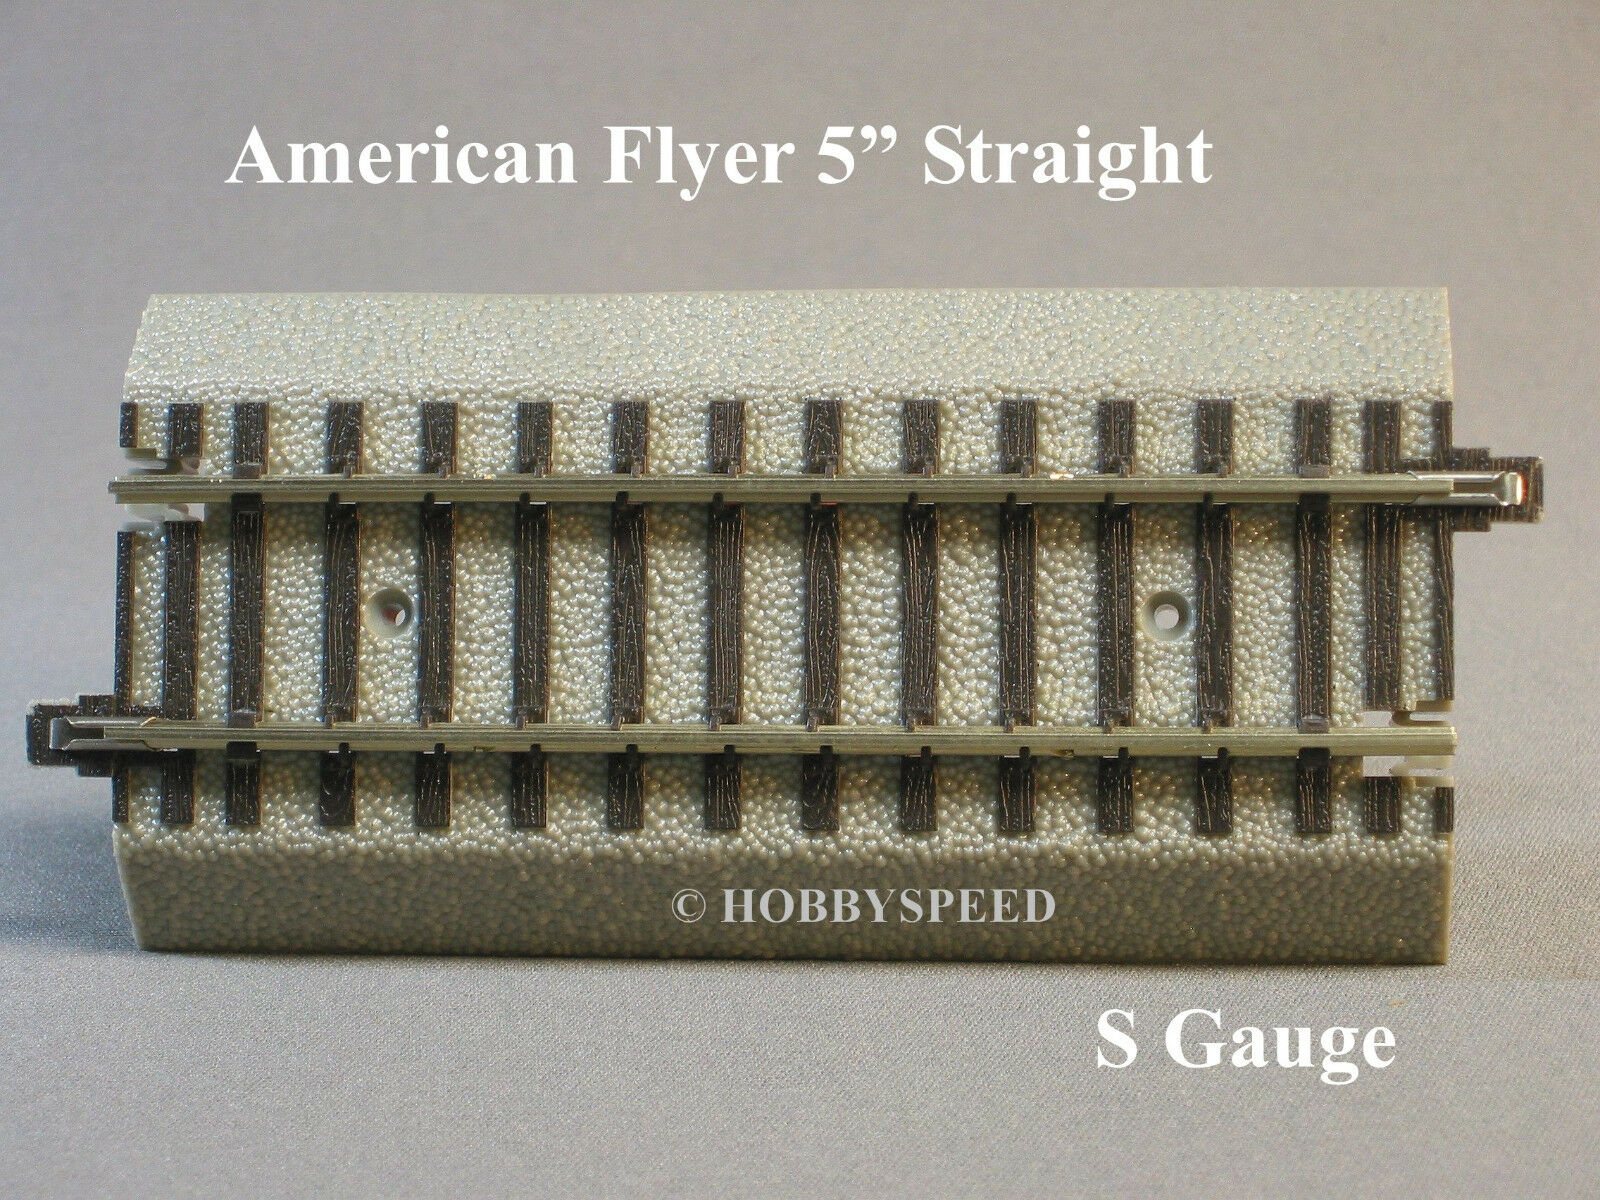 Lionel American Flyer Fastrack 5" Straight Track S Gauge Af 2 Rail 6-49867 New